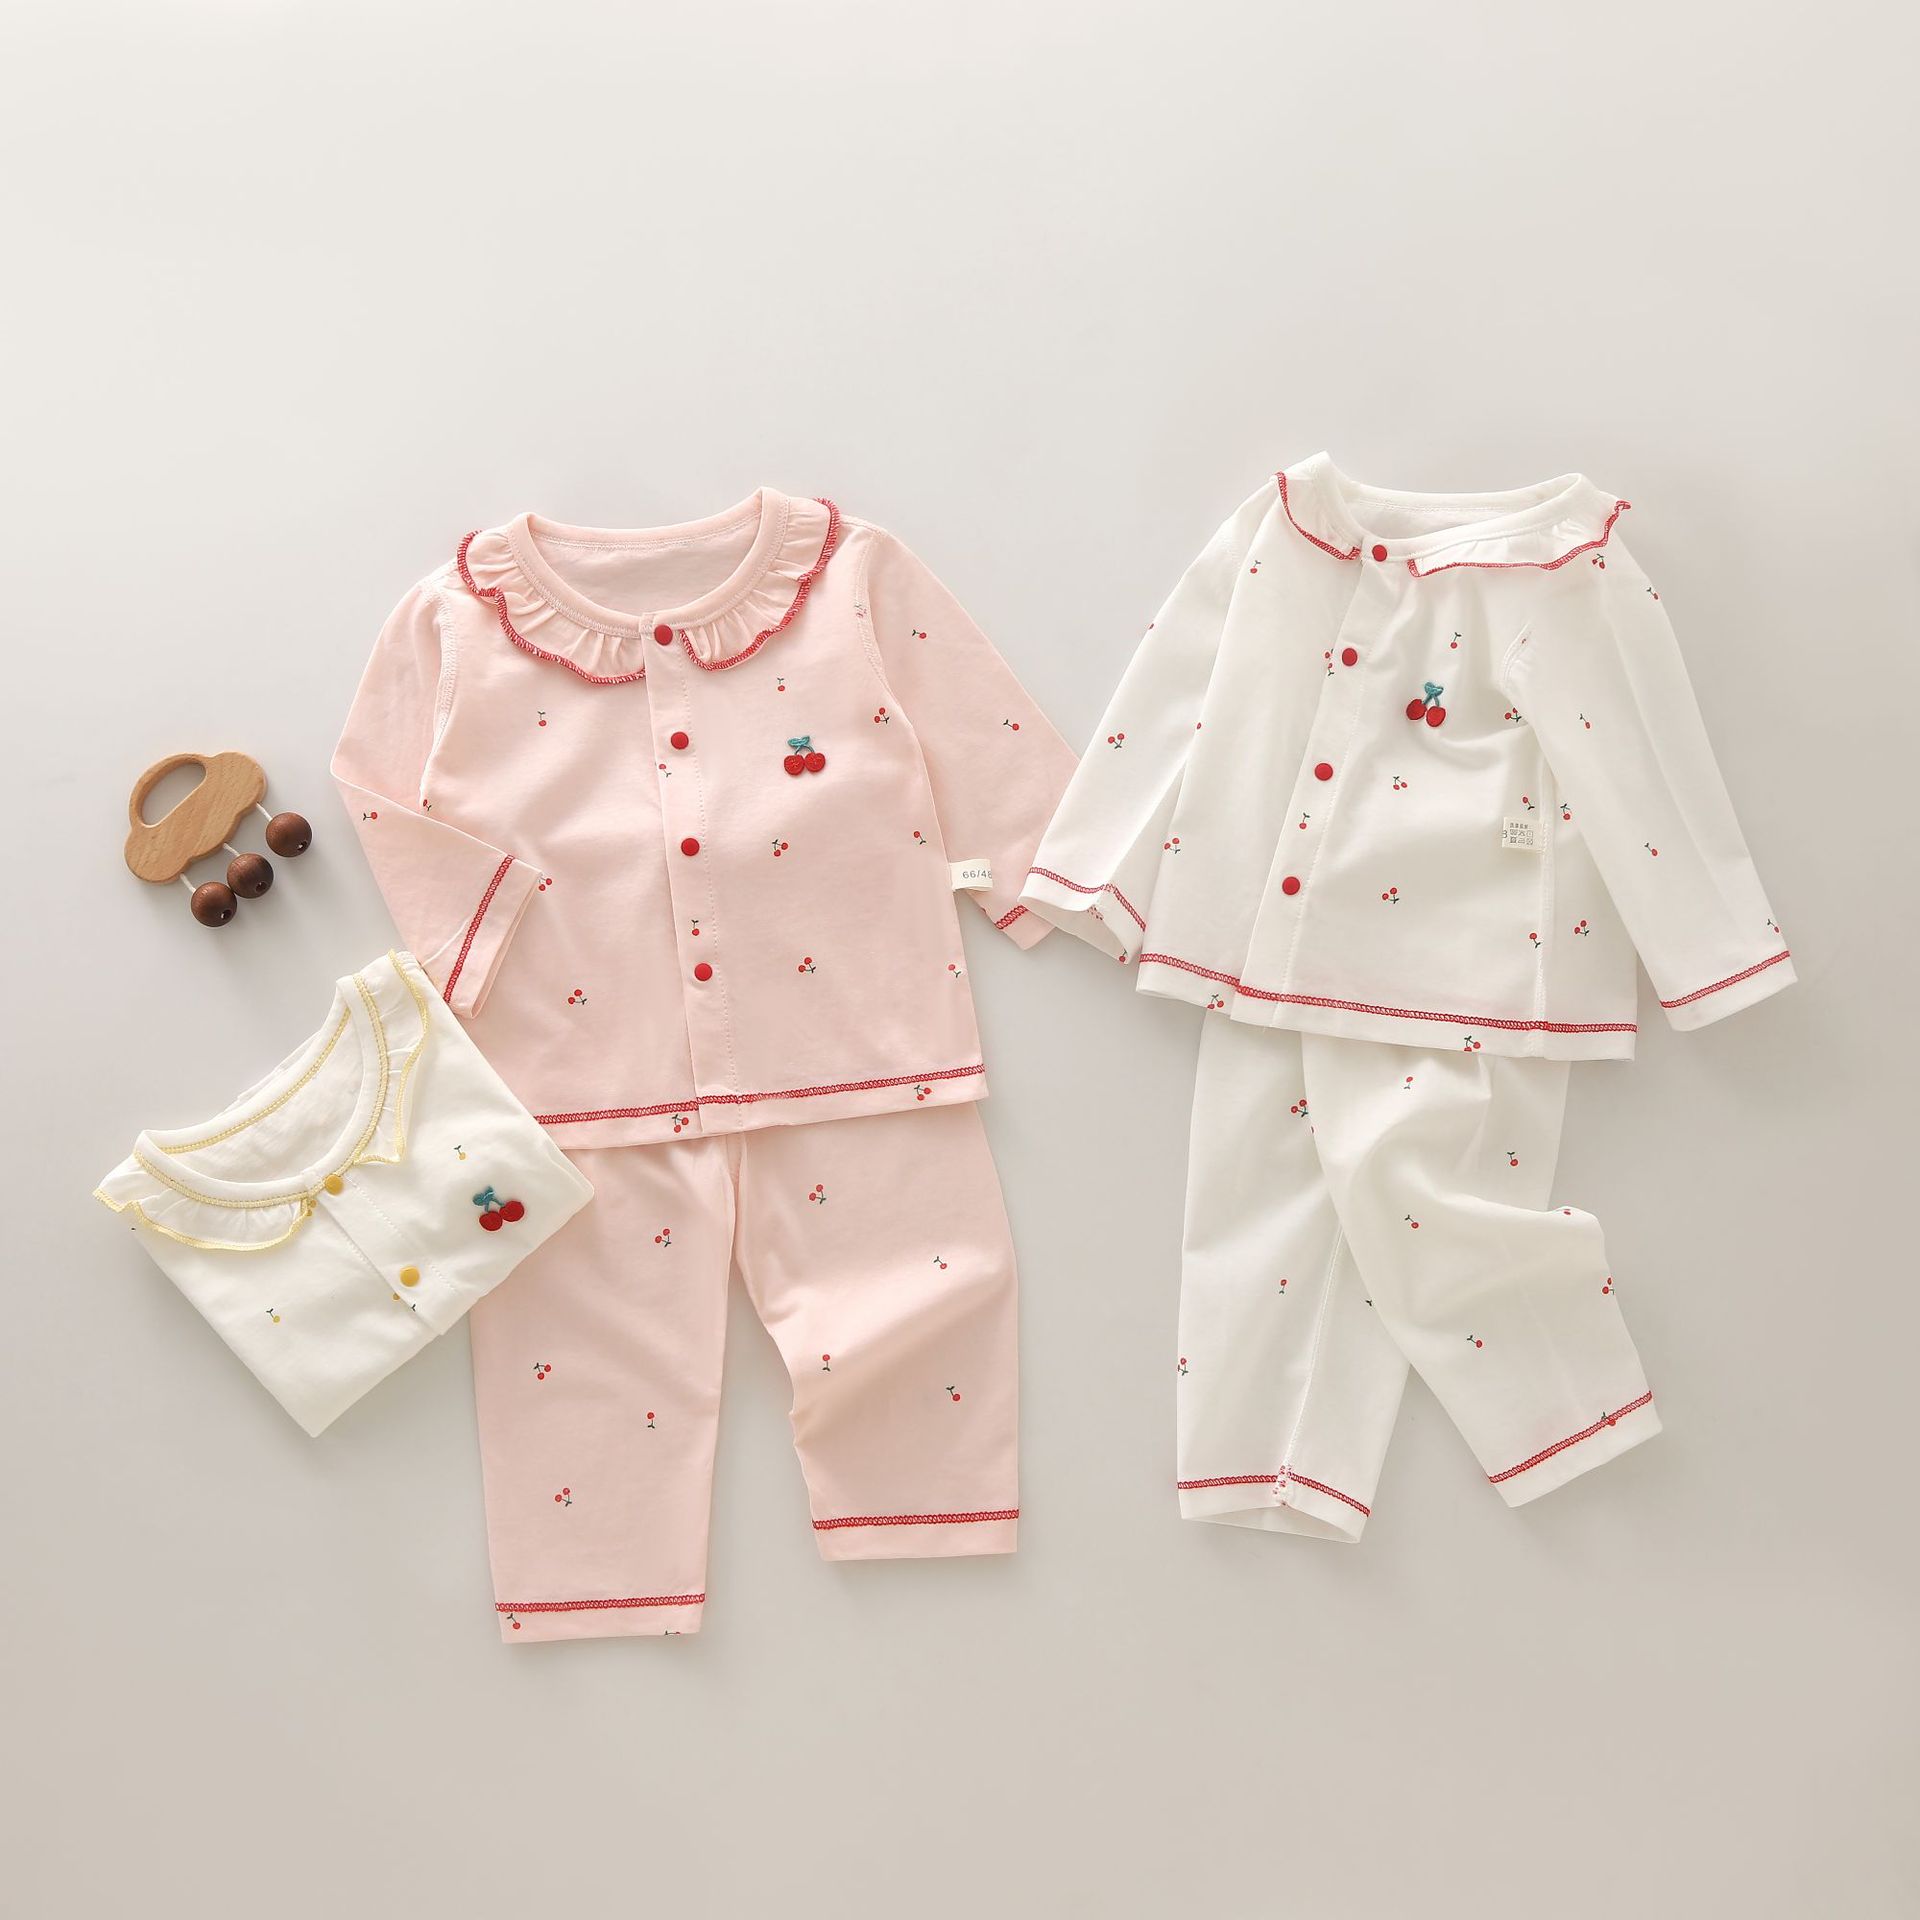 婴儿夏季衣服女宝宝两件套空调服a类纯棉睡衣新生儿内衣套装薄款